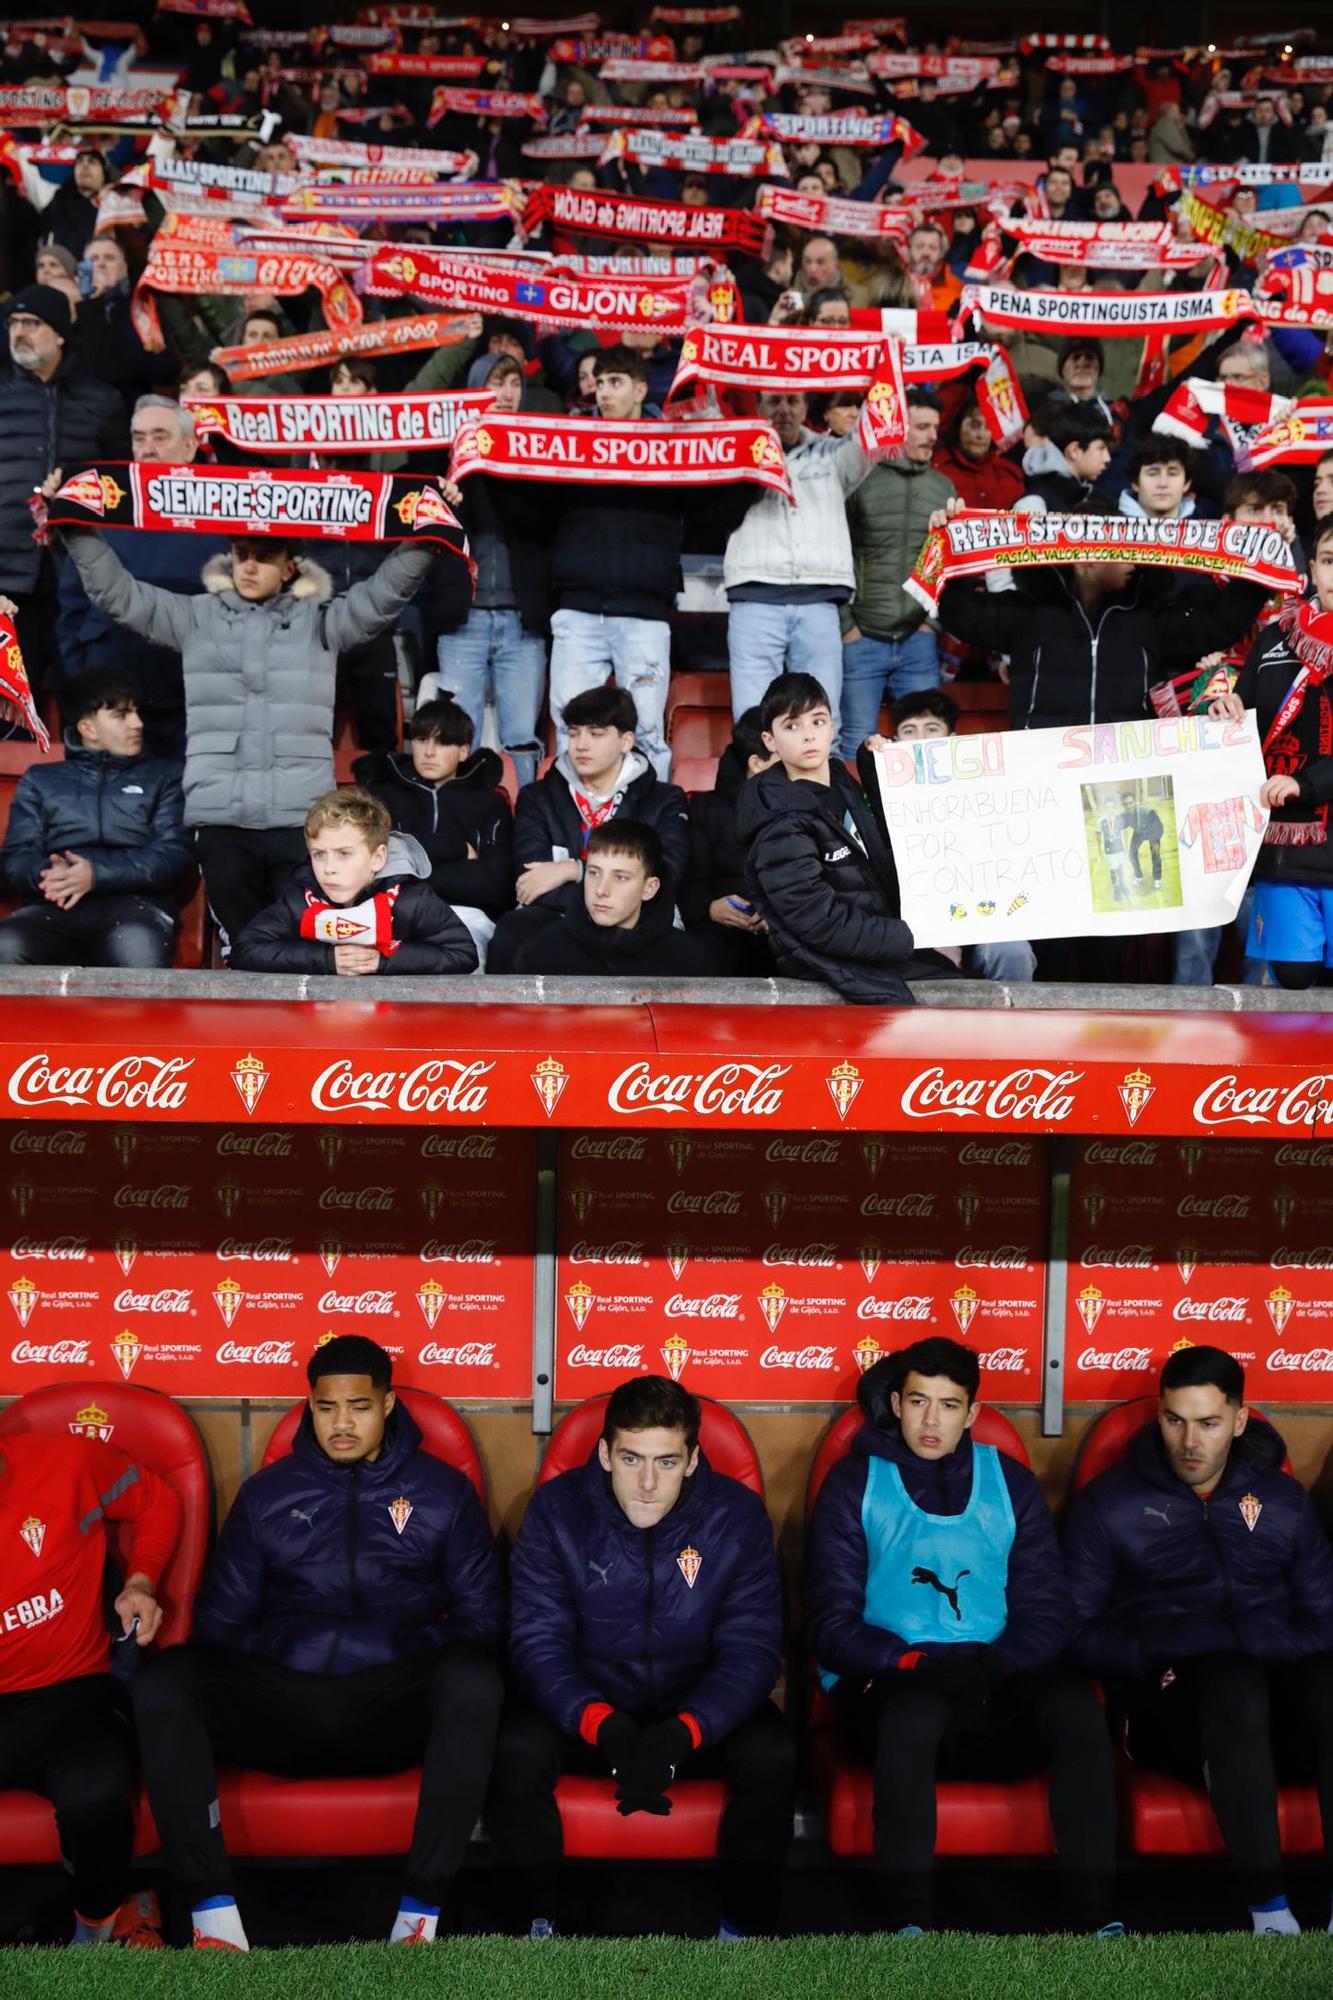 En imágenes: Así fue el Sporting-Málaga disputado en El Molinón